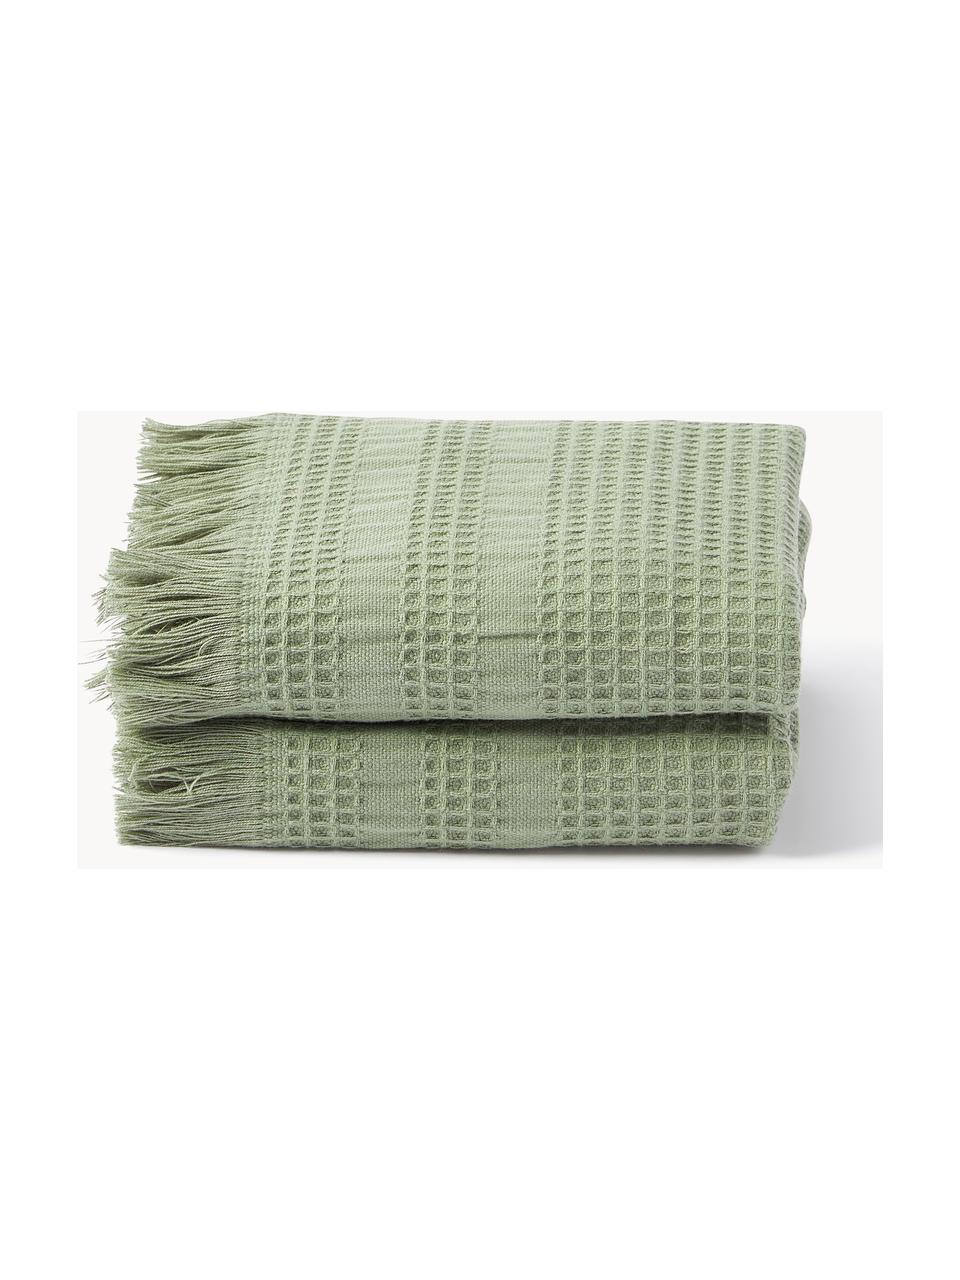 Ręcznik z piki waflowej Yara, różne rozmiary, Oliwkowy zielony, Ręcznik, S 50 x D 100 cm, 2 szt.